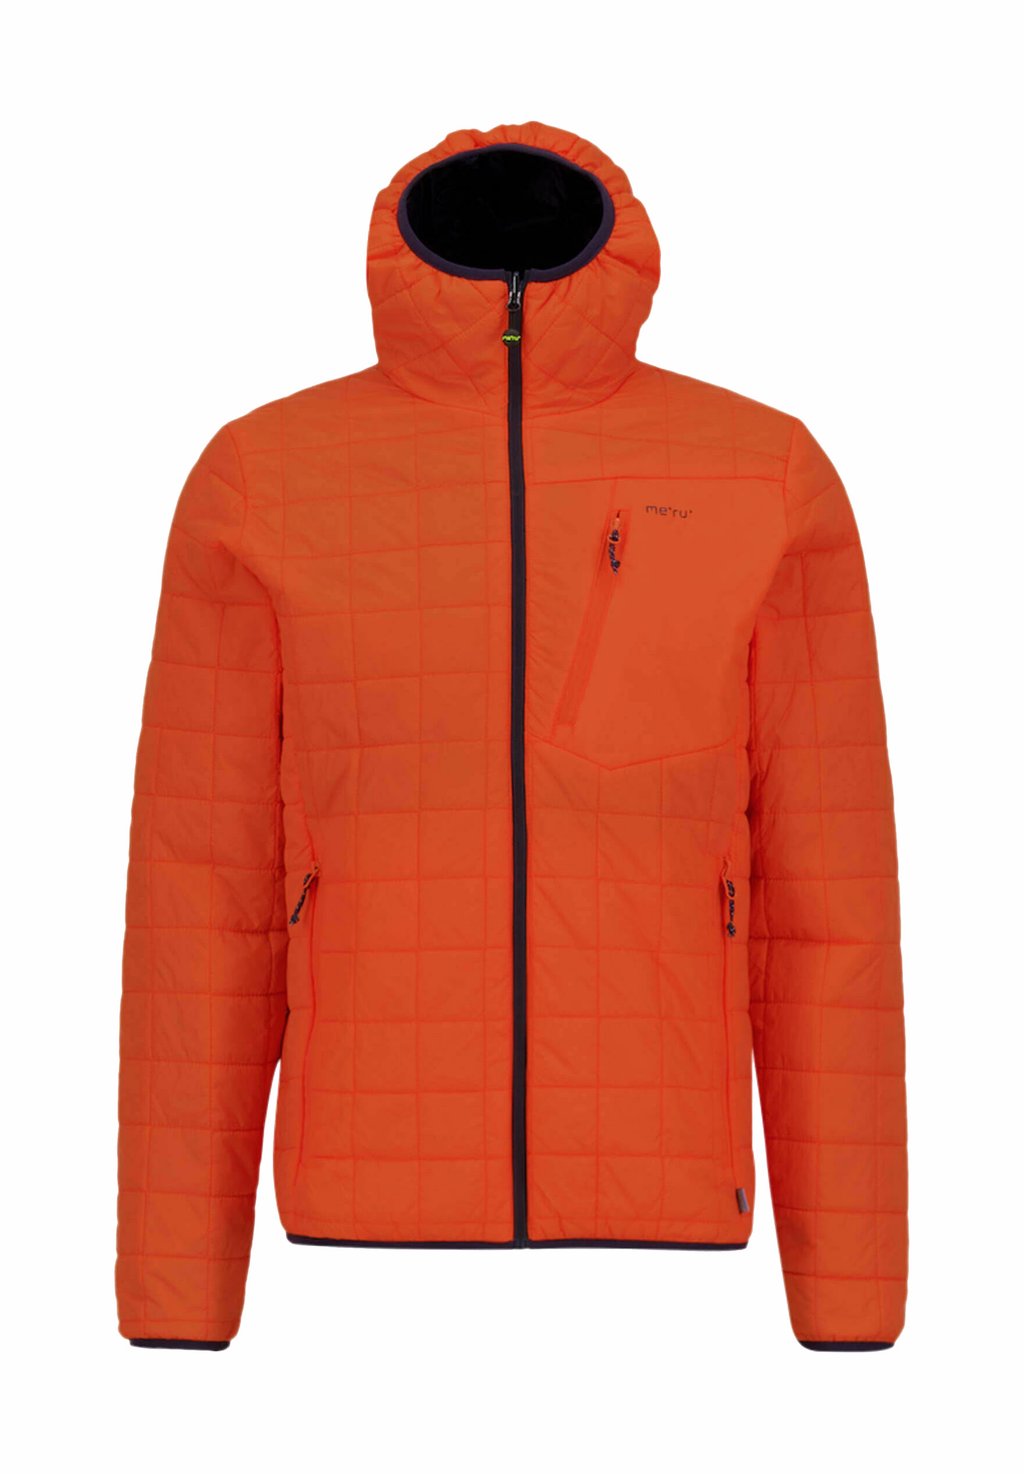 Куртка Meru, оранжевый